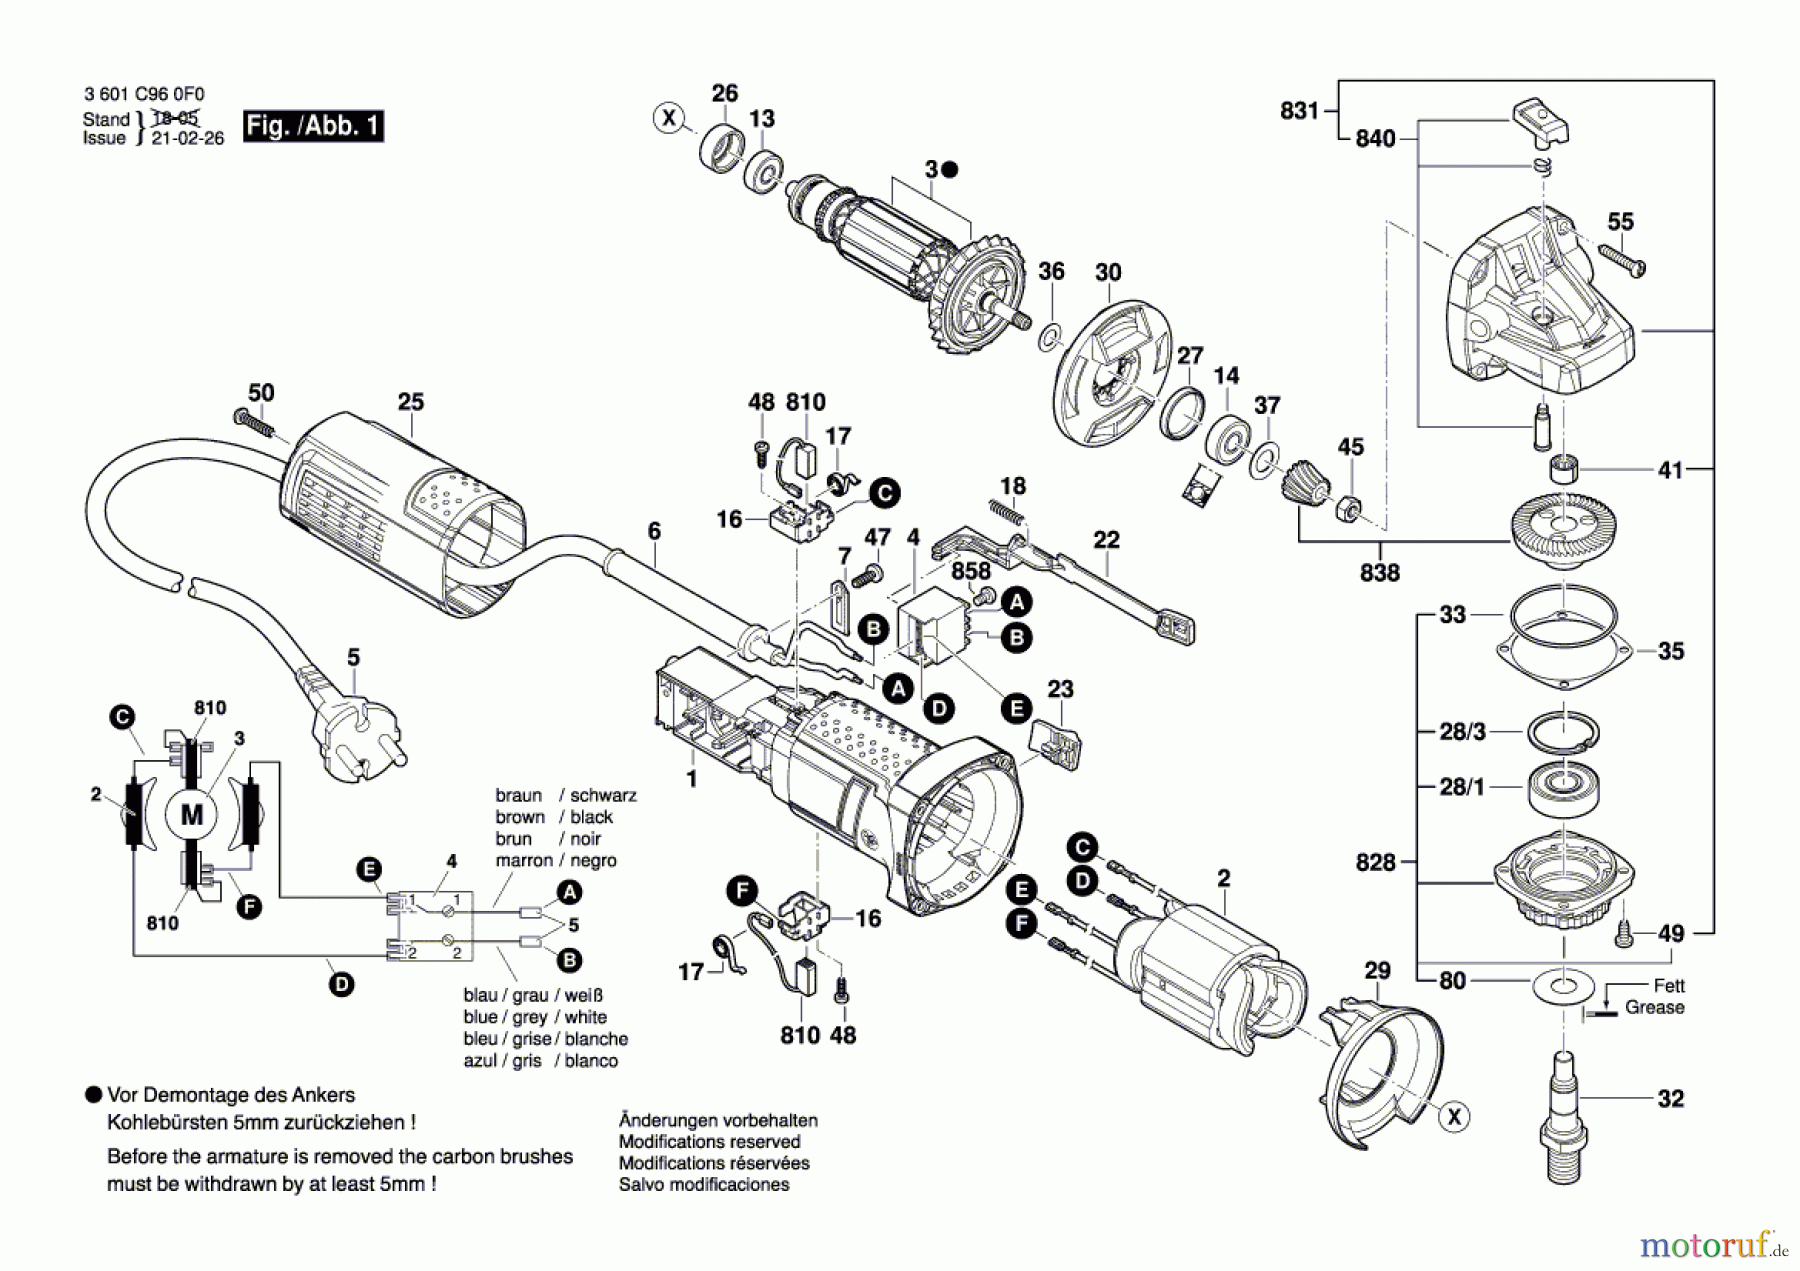  Bosch Werkzeug Winkelschleifer GWS 900-100 Seite 1